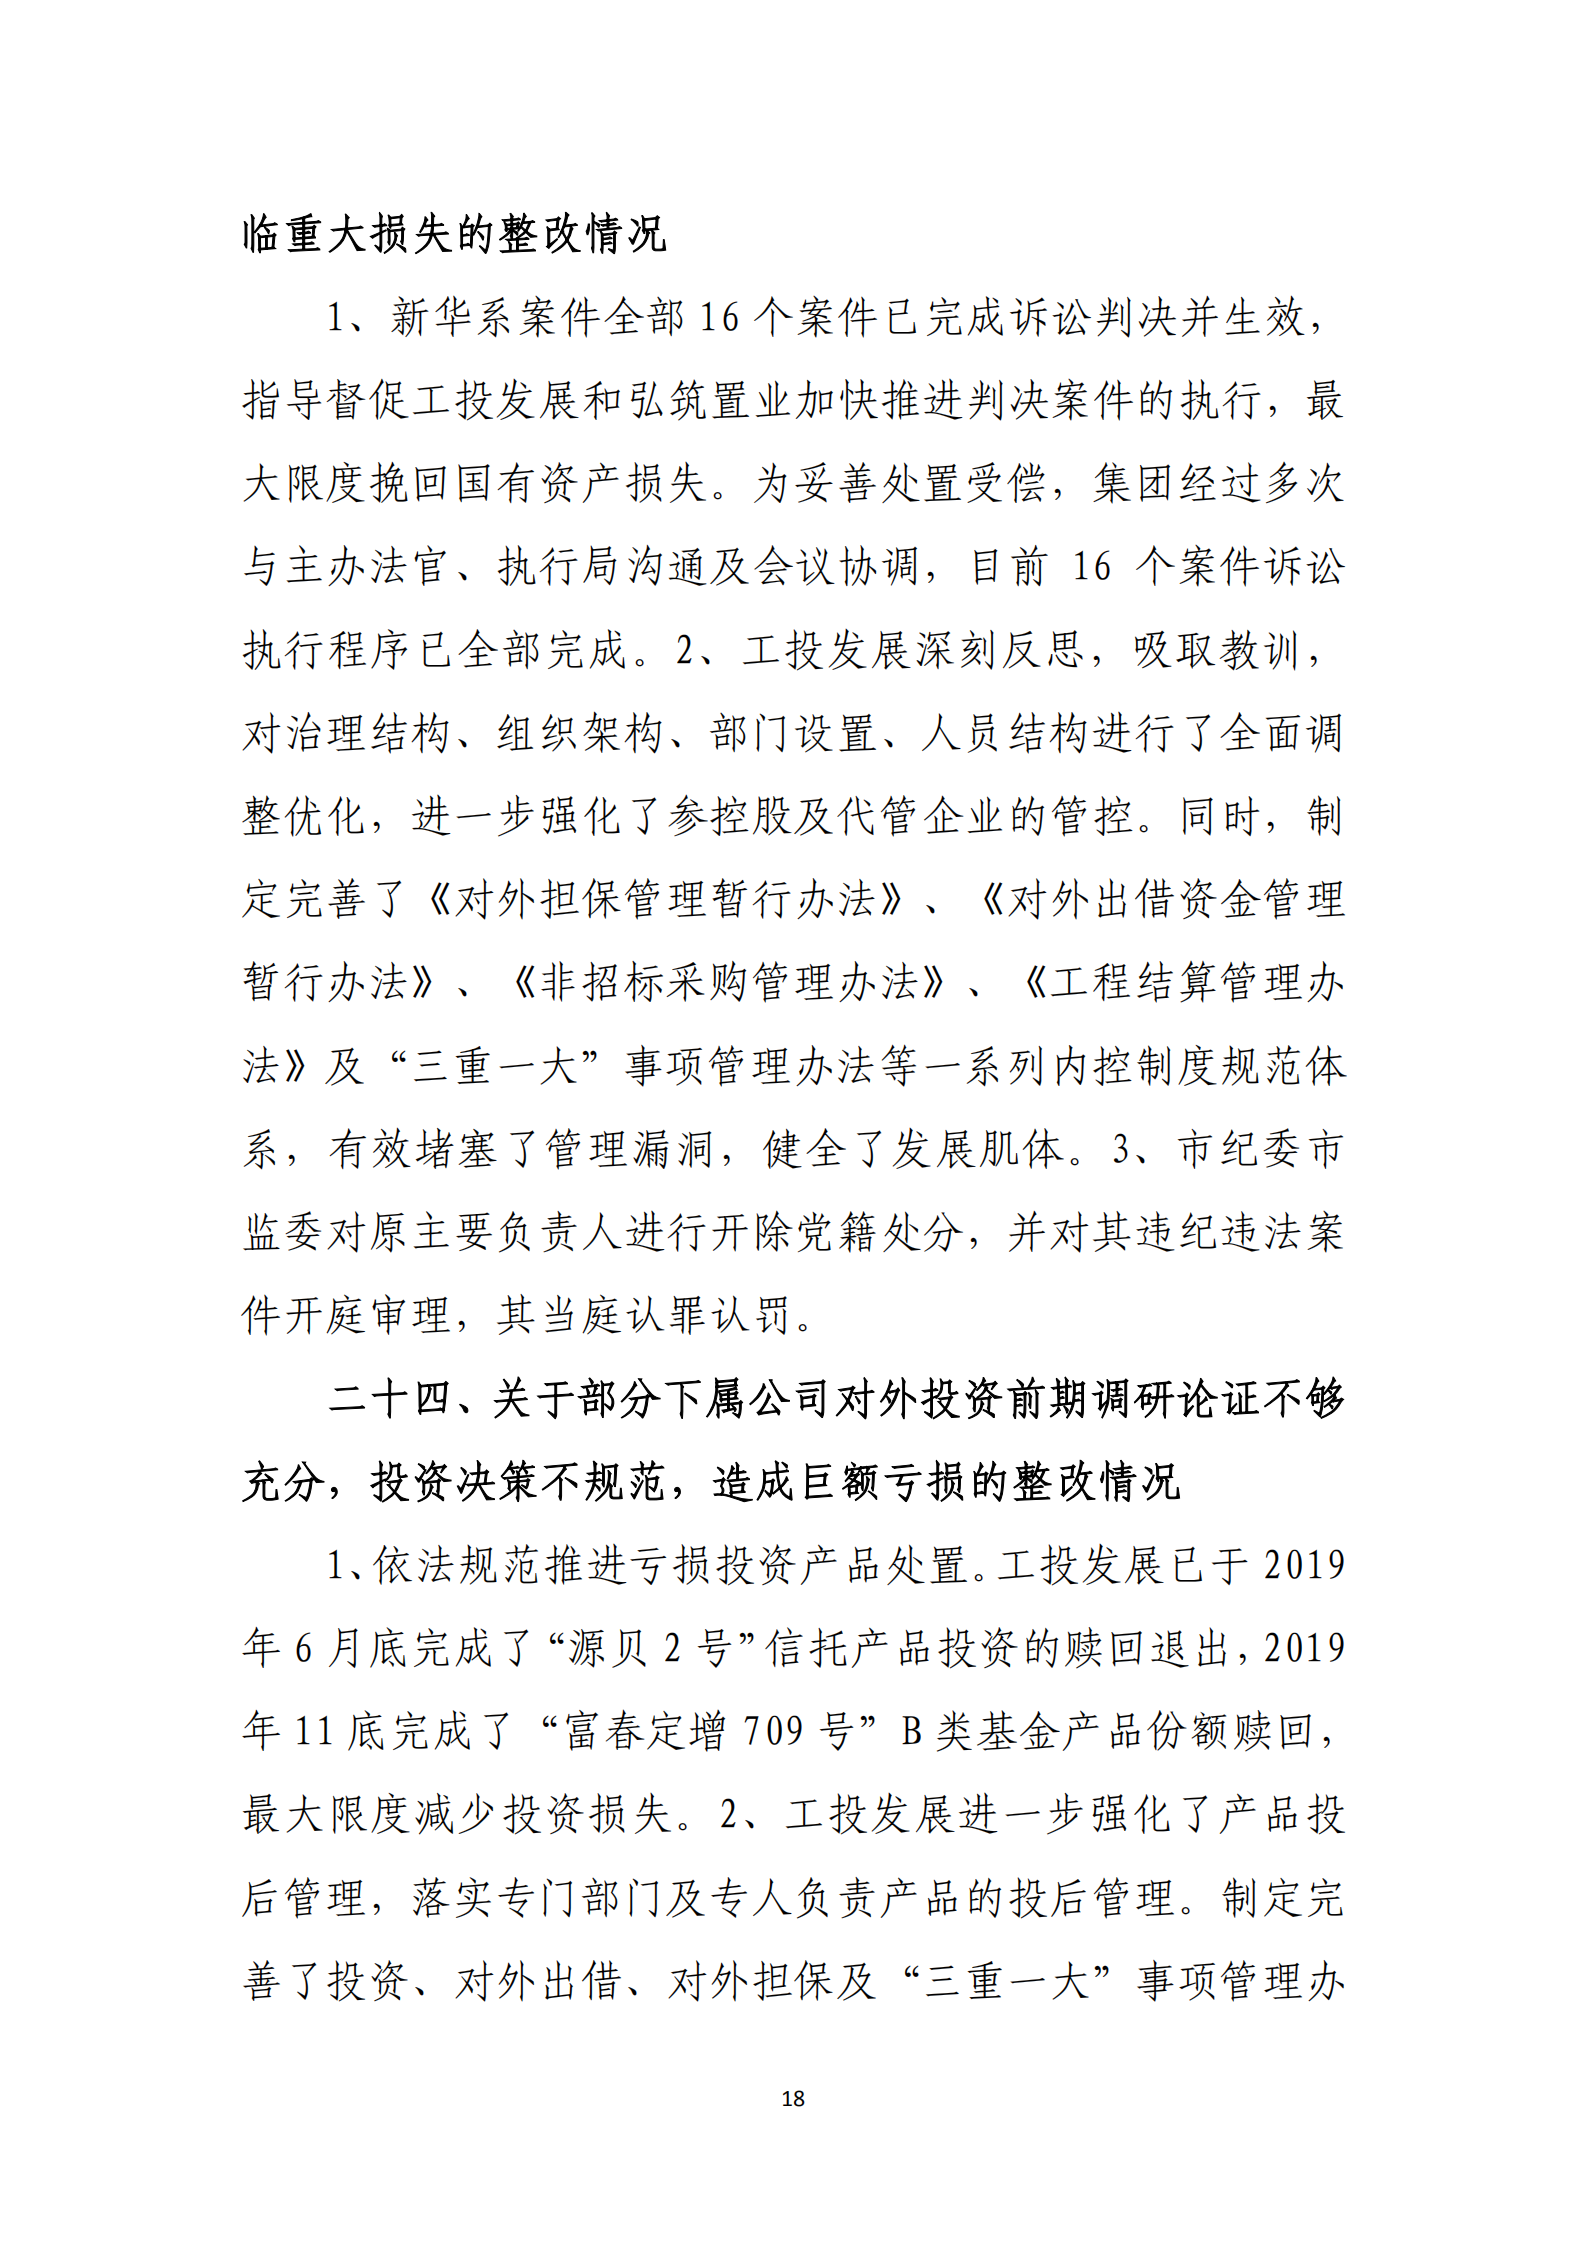 博乐体育网页【中国】有限公司党委关于巡察整改情况的通报_17.png